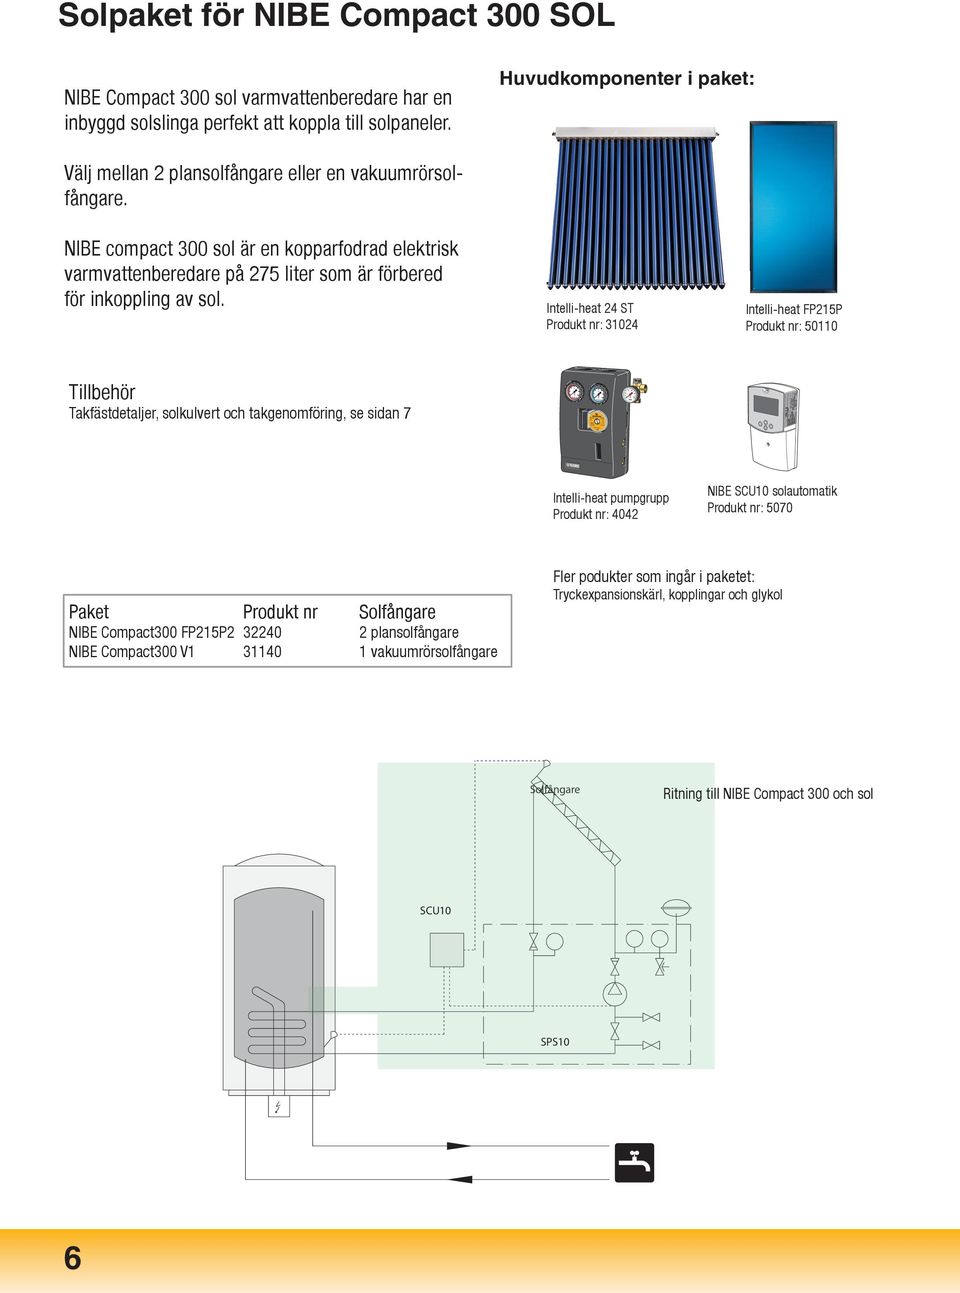 NIBE compact 300 sol är en kopparfodrad elektrisk varmvattenberedare på 275 liter som är förbered för inkoppling av sol.